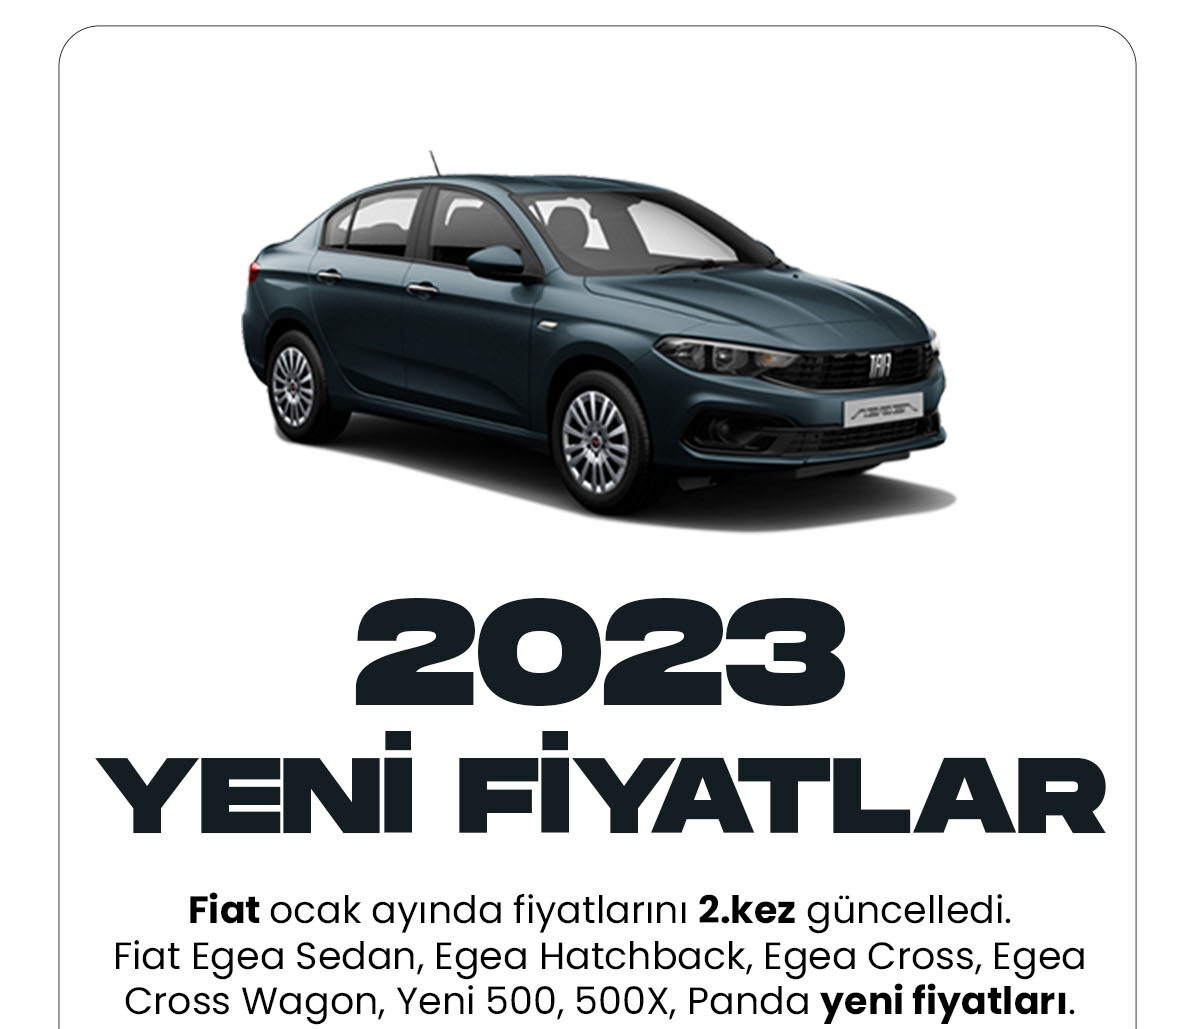 Fiat Ocak yeni fiyat listesi yayımlandı. Fiat araç markası Ocak ayında araç fiyatlarını 2.kez güncelledi. Türkiye'de en çok tercih edilen araç markaları arasında FIAT ilk sırada yer alıyor.